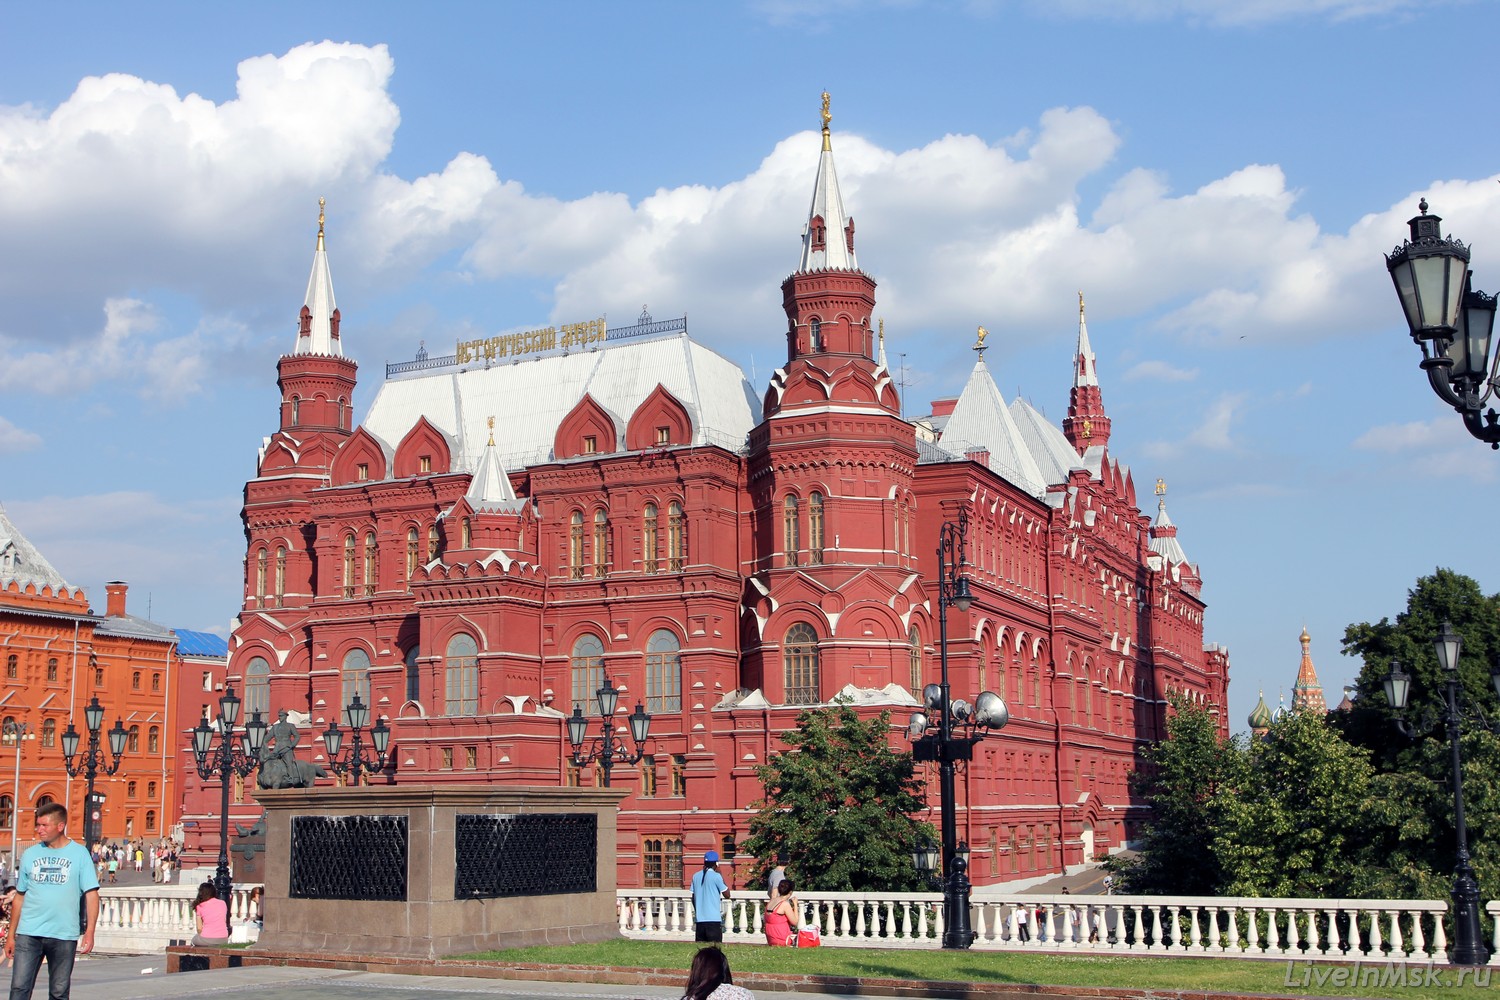 Здание Государственного исторического музея, фото 2014 года